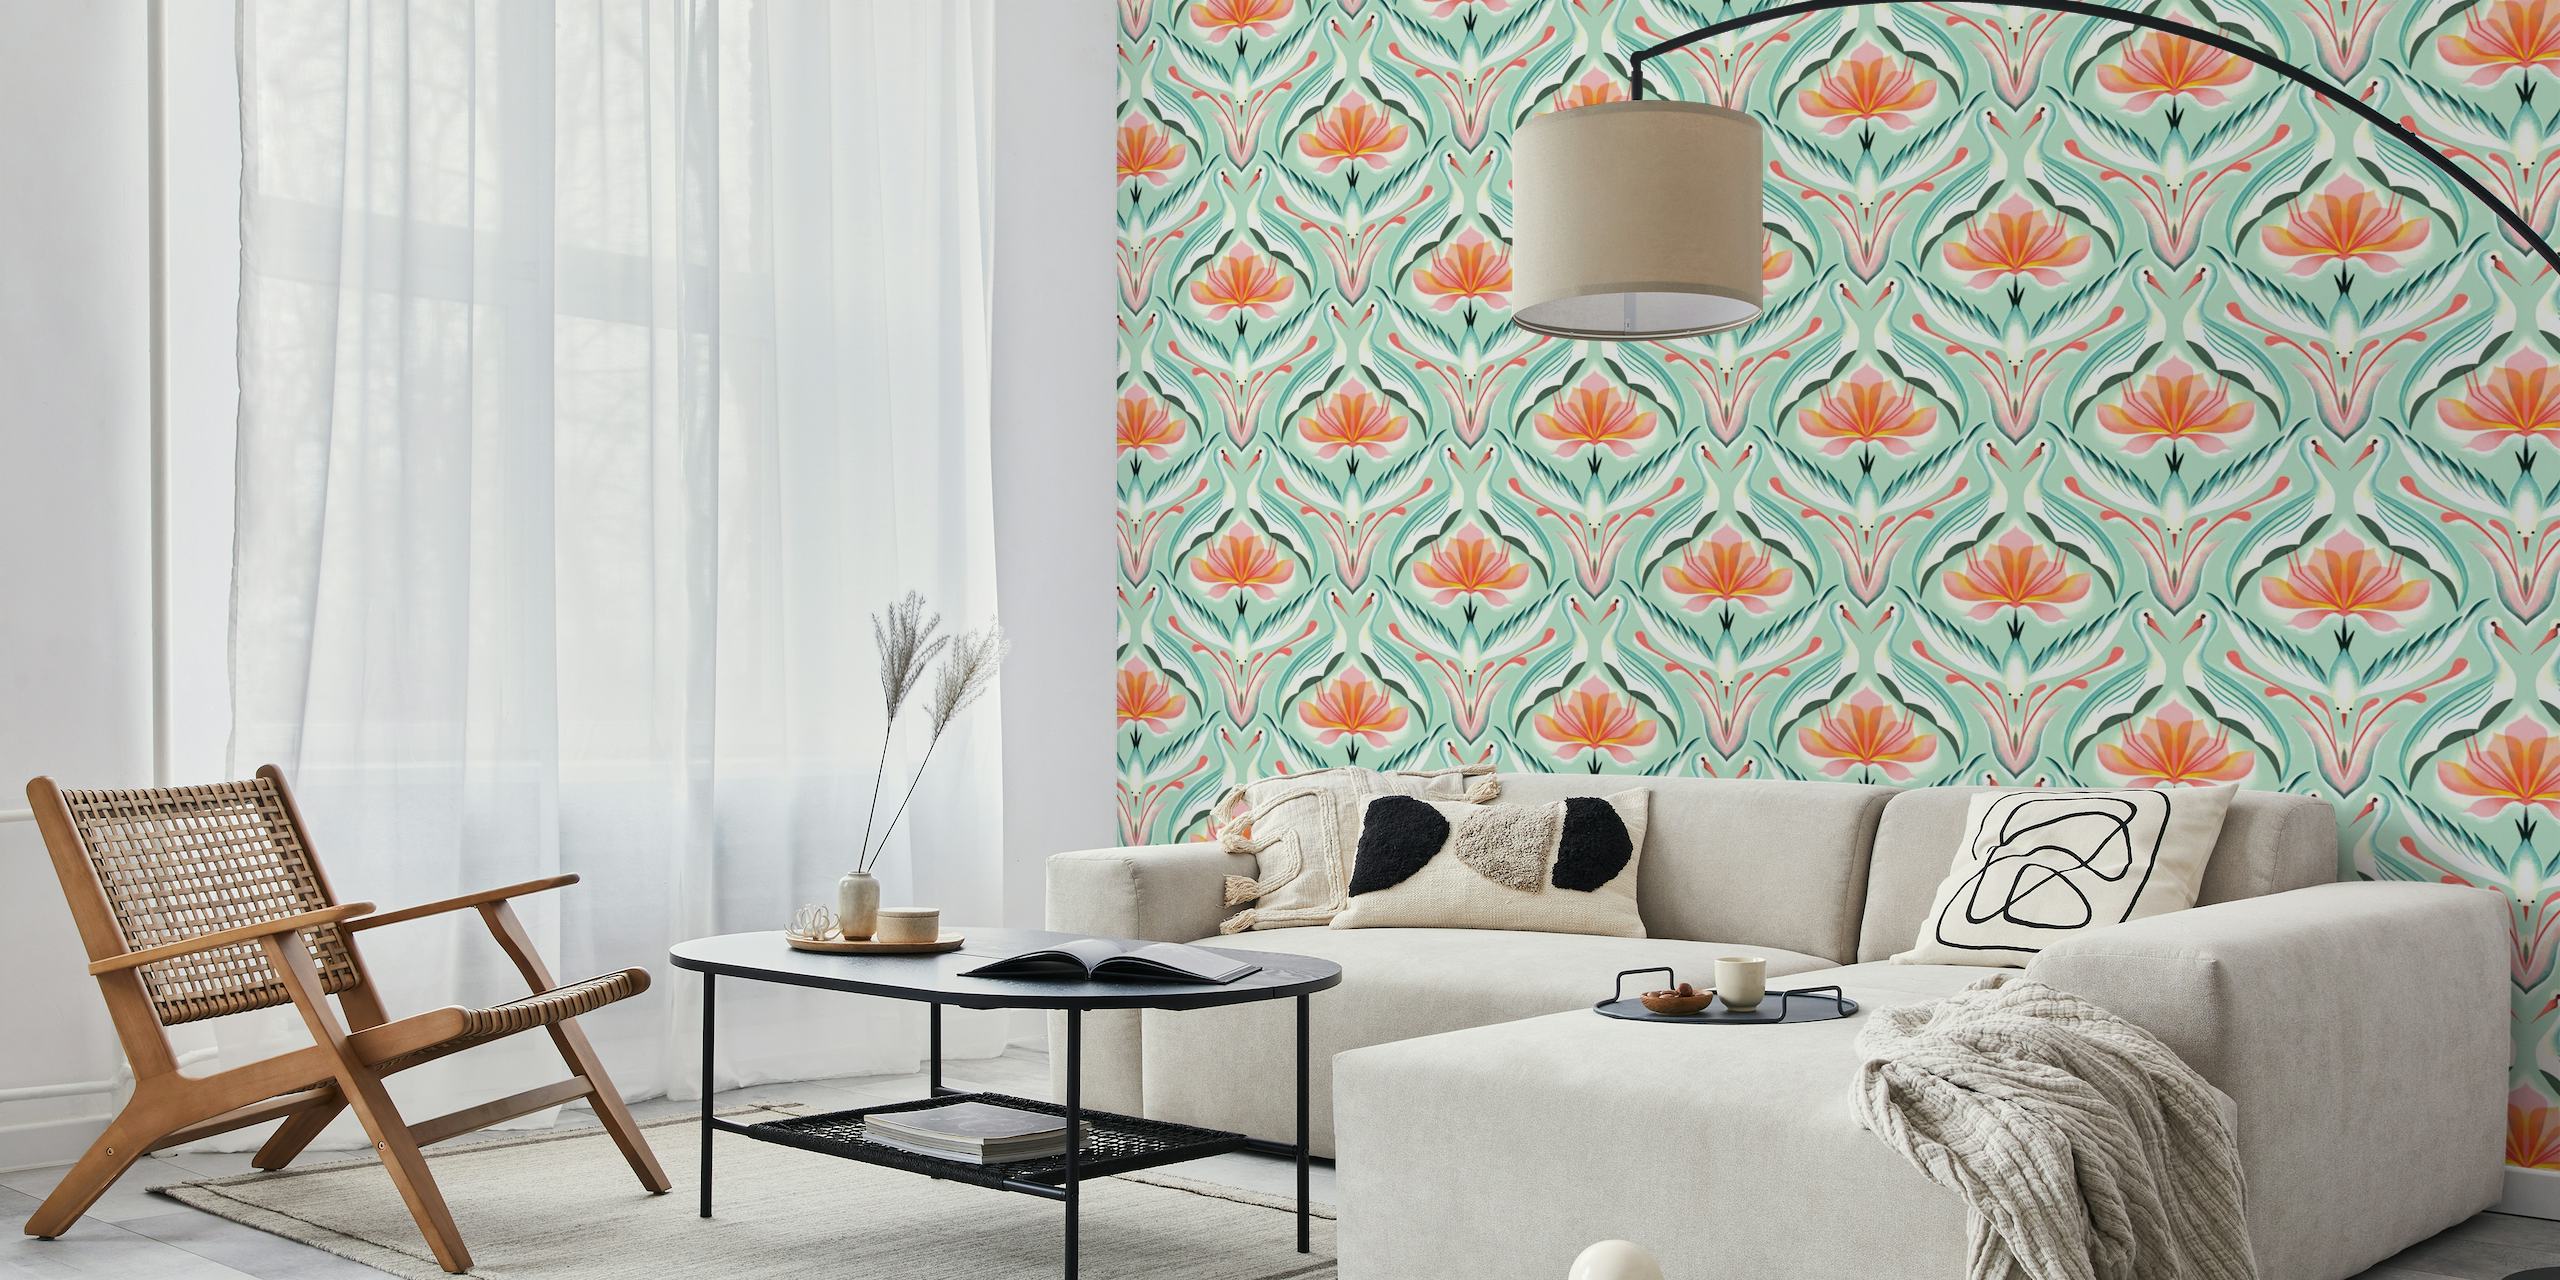 Fototapete mit Lotusblumen und eleganten Kranichen in symmetrischem Design mit einer sanften Farbpalette